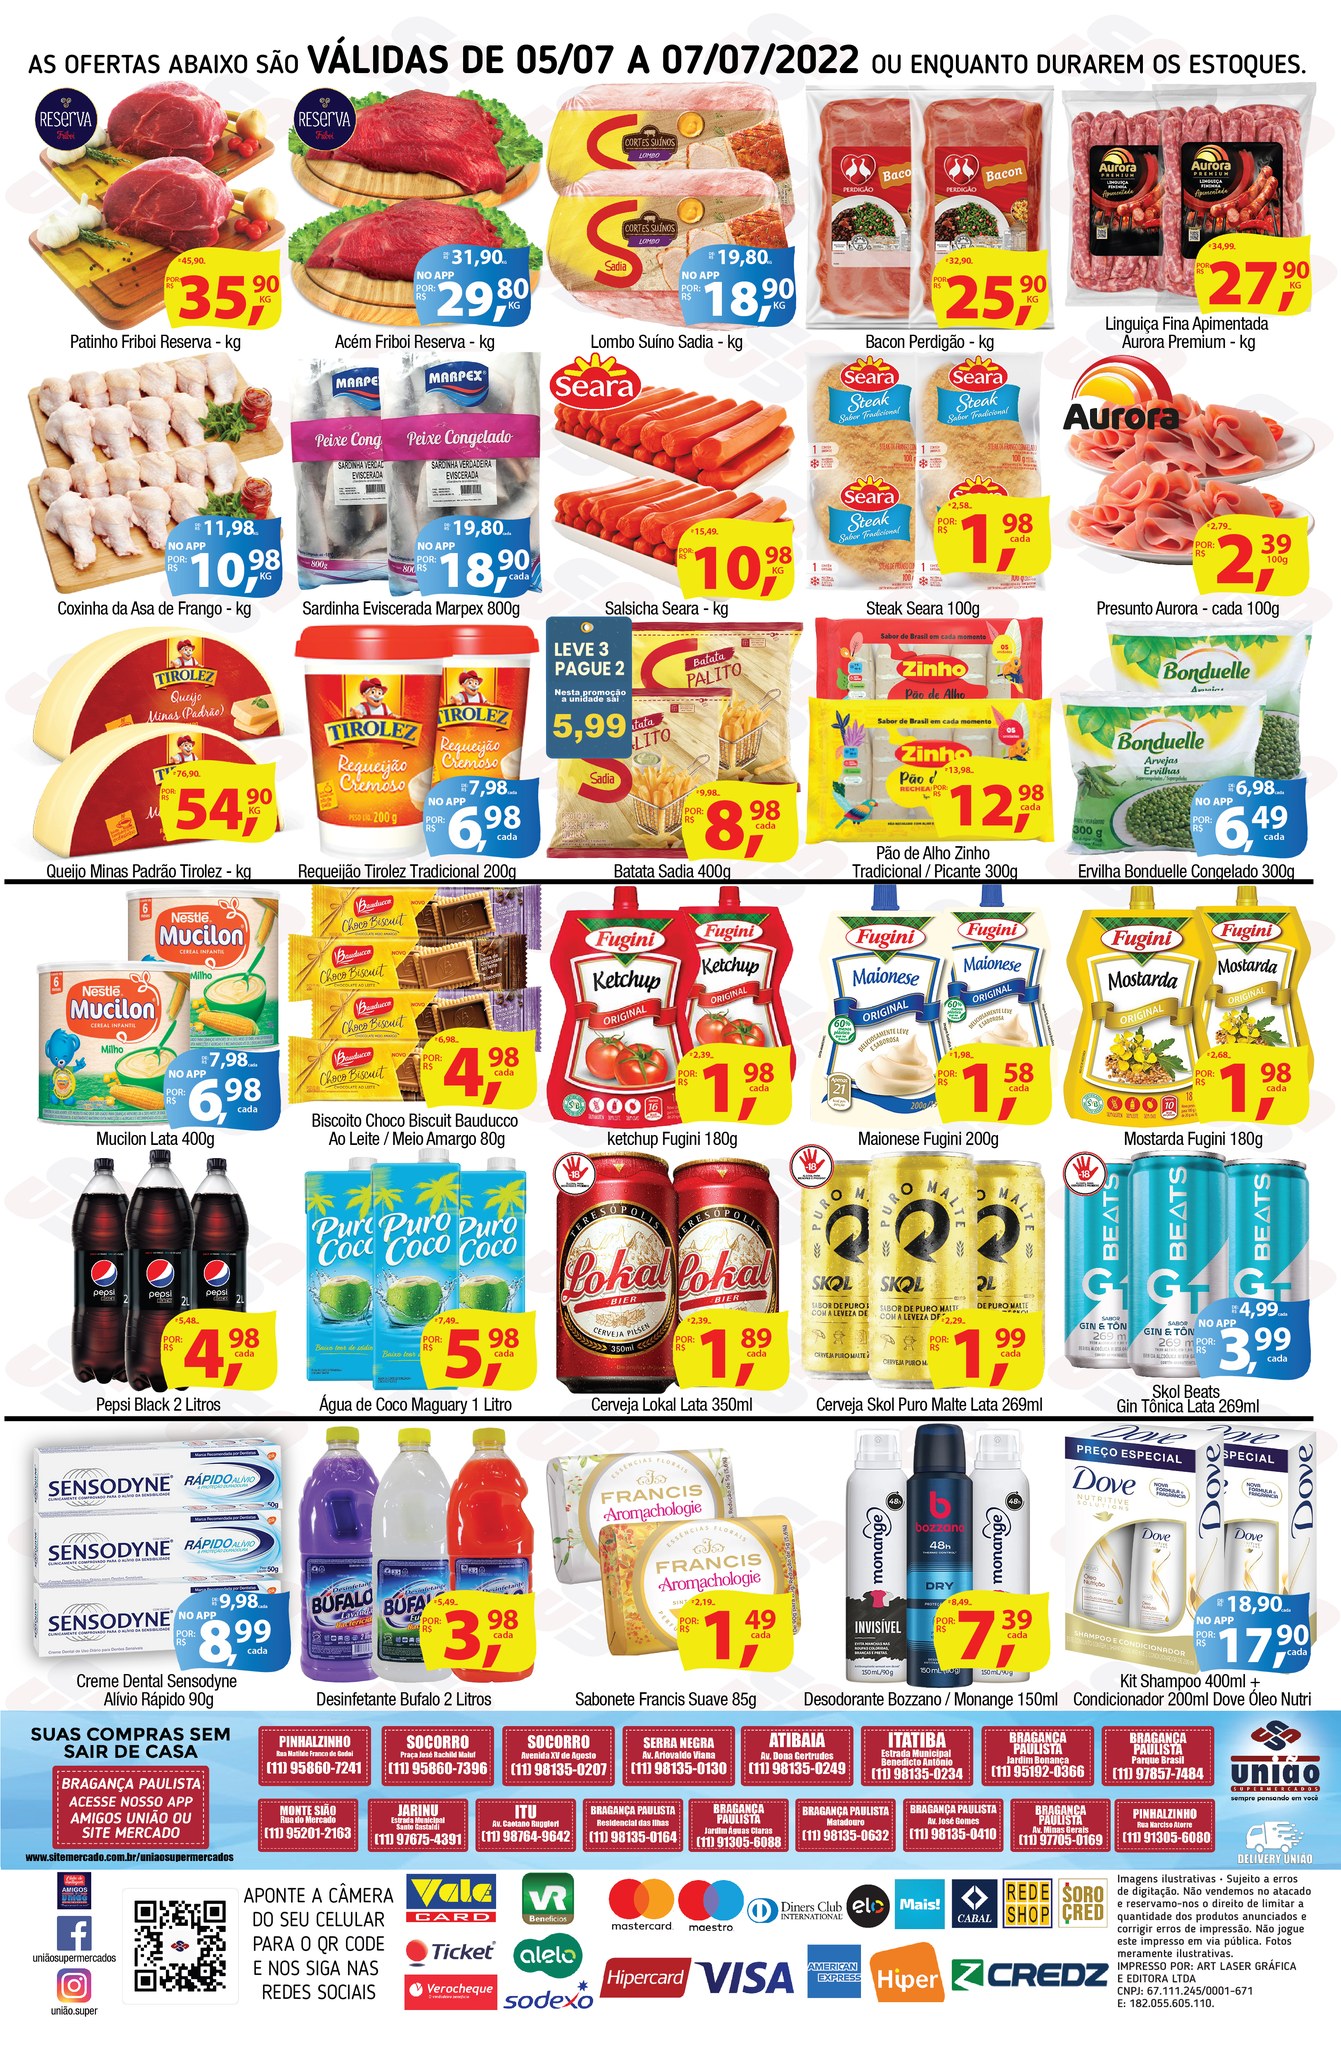 Quarta-feira de ofertas no açougue, bebidas, hortifrúti e muito mais, no União Supermercados